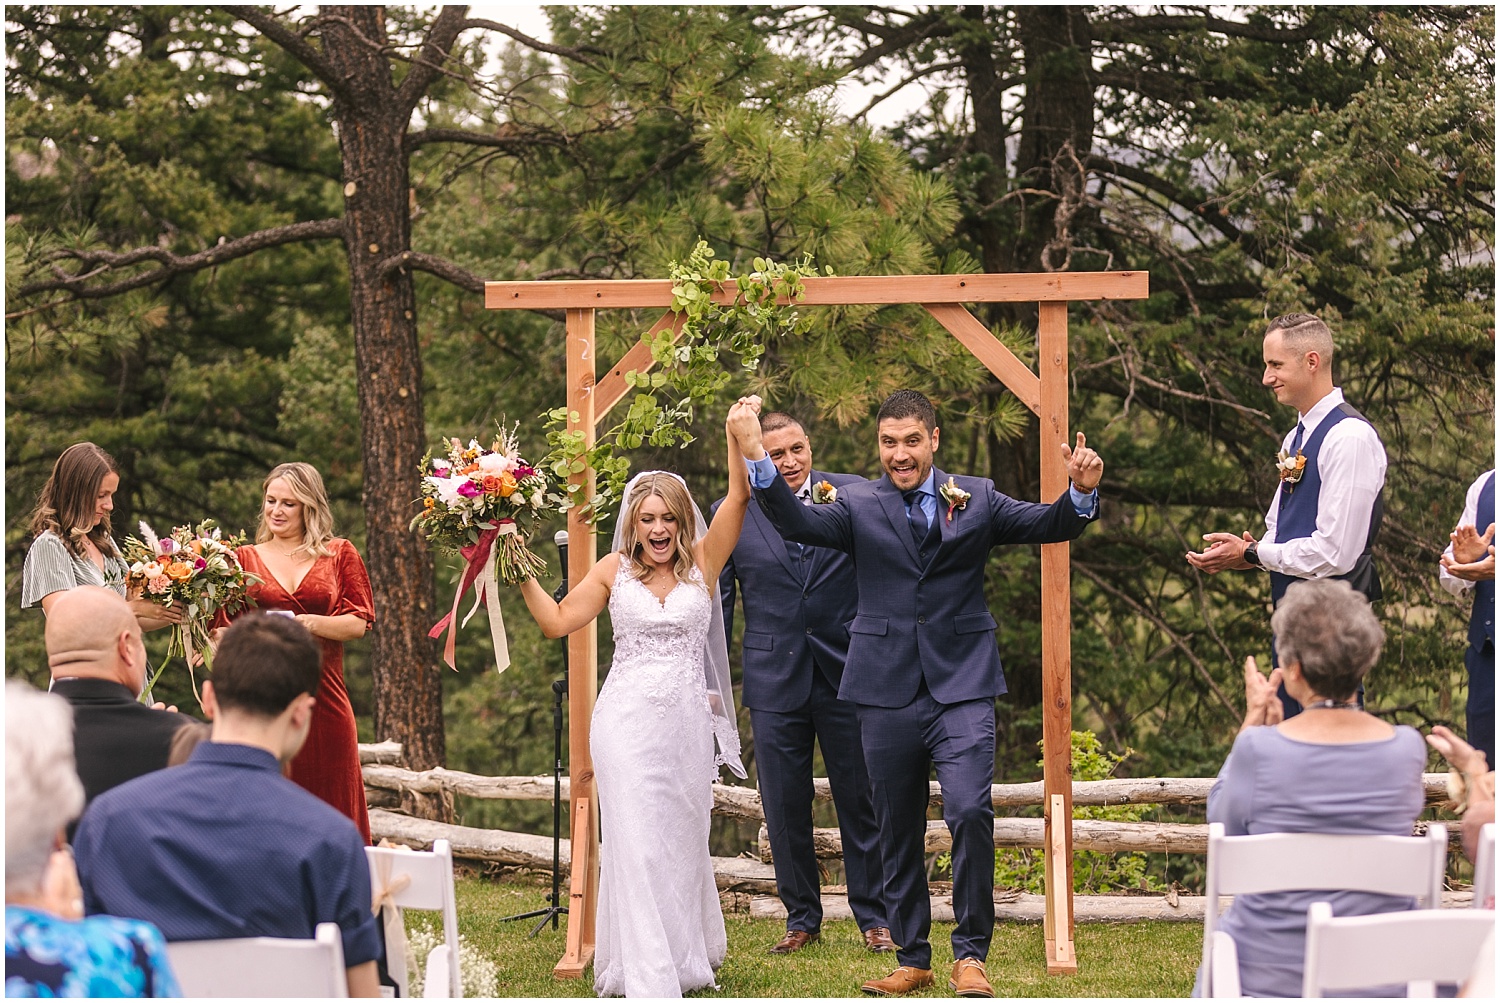 Bride and groom cheering after wedding ceremony in Durango Colorado